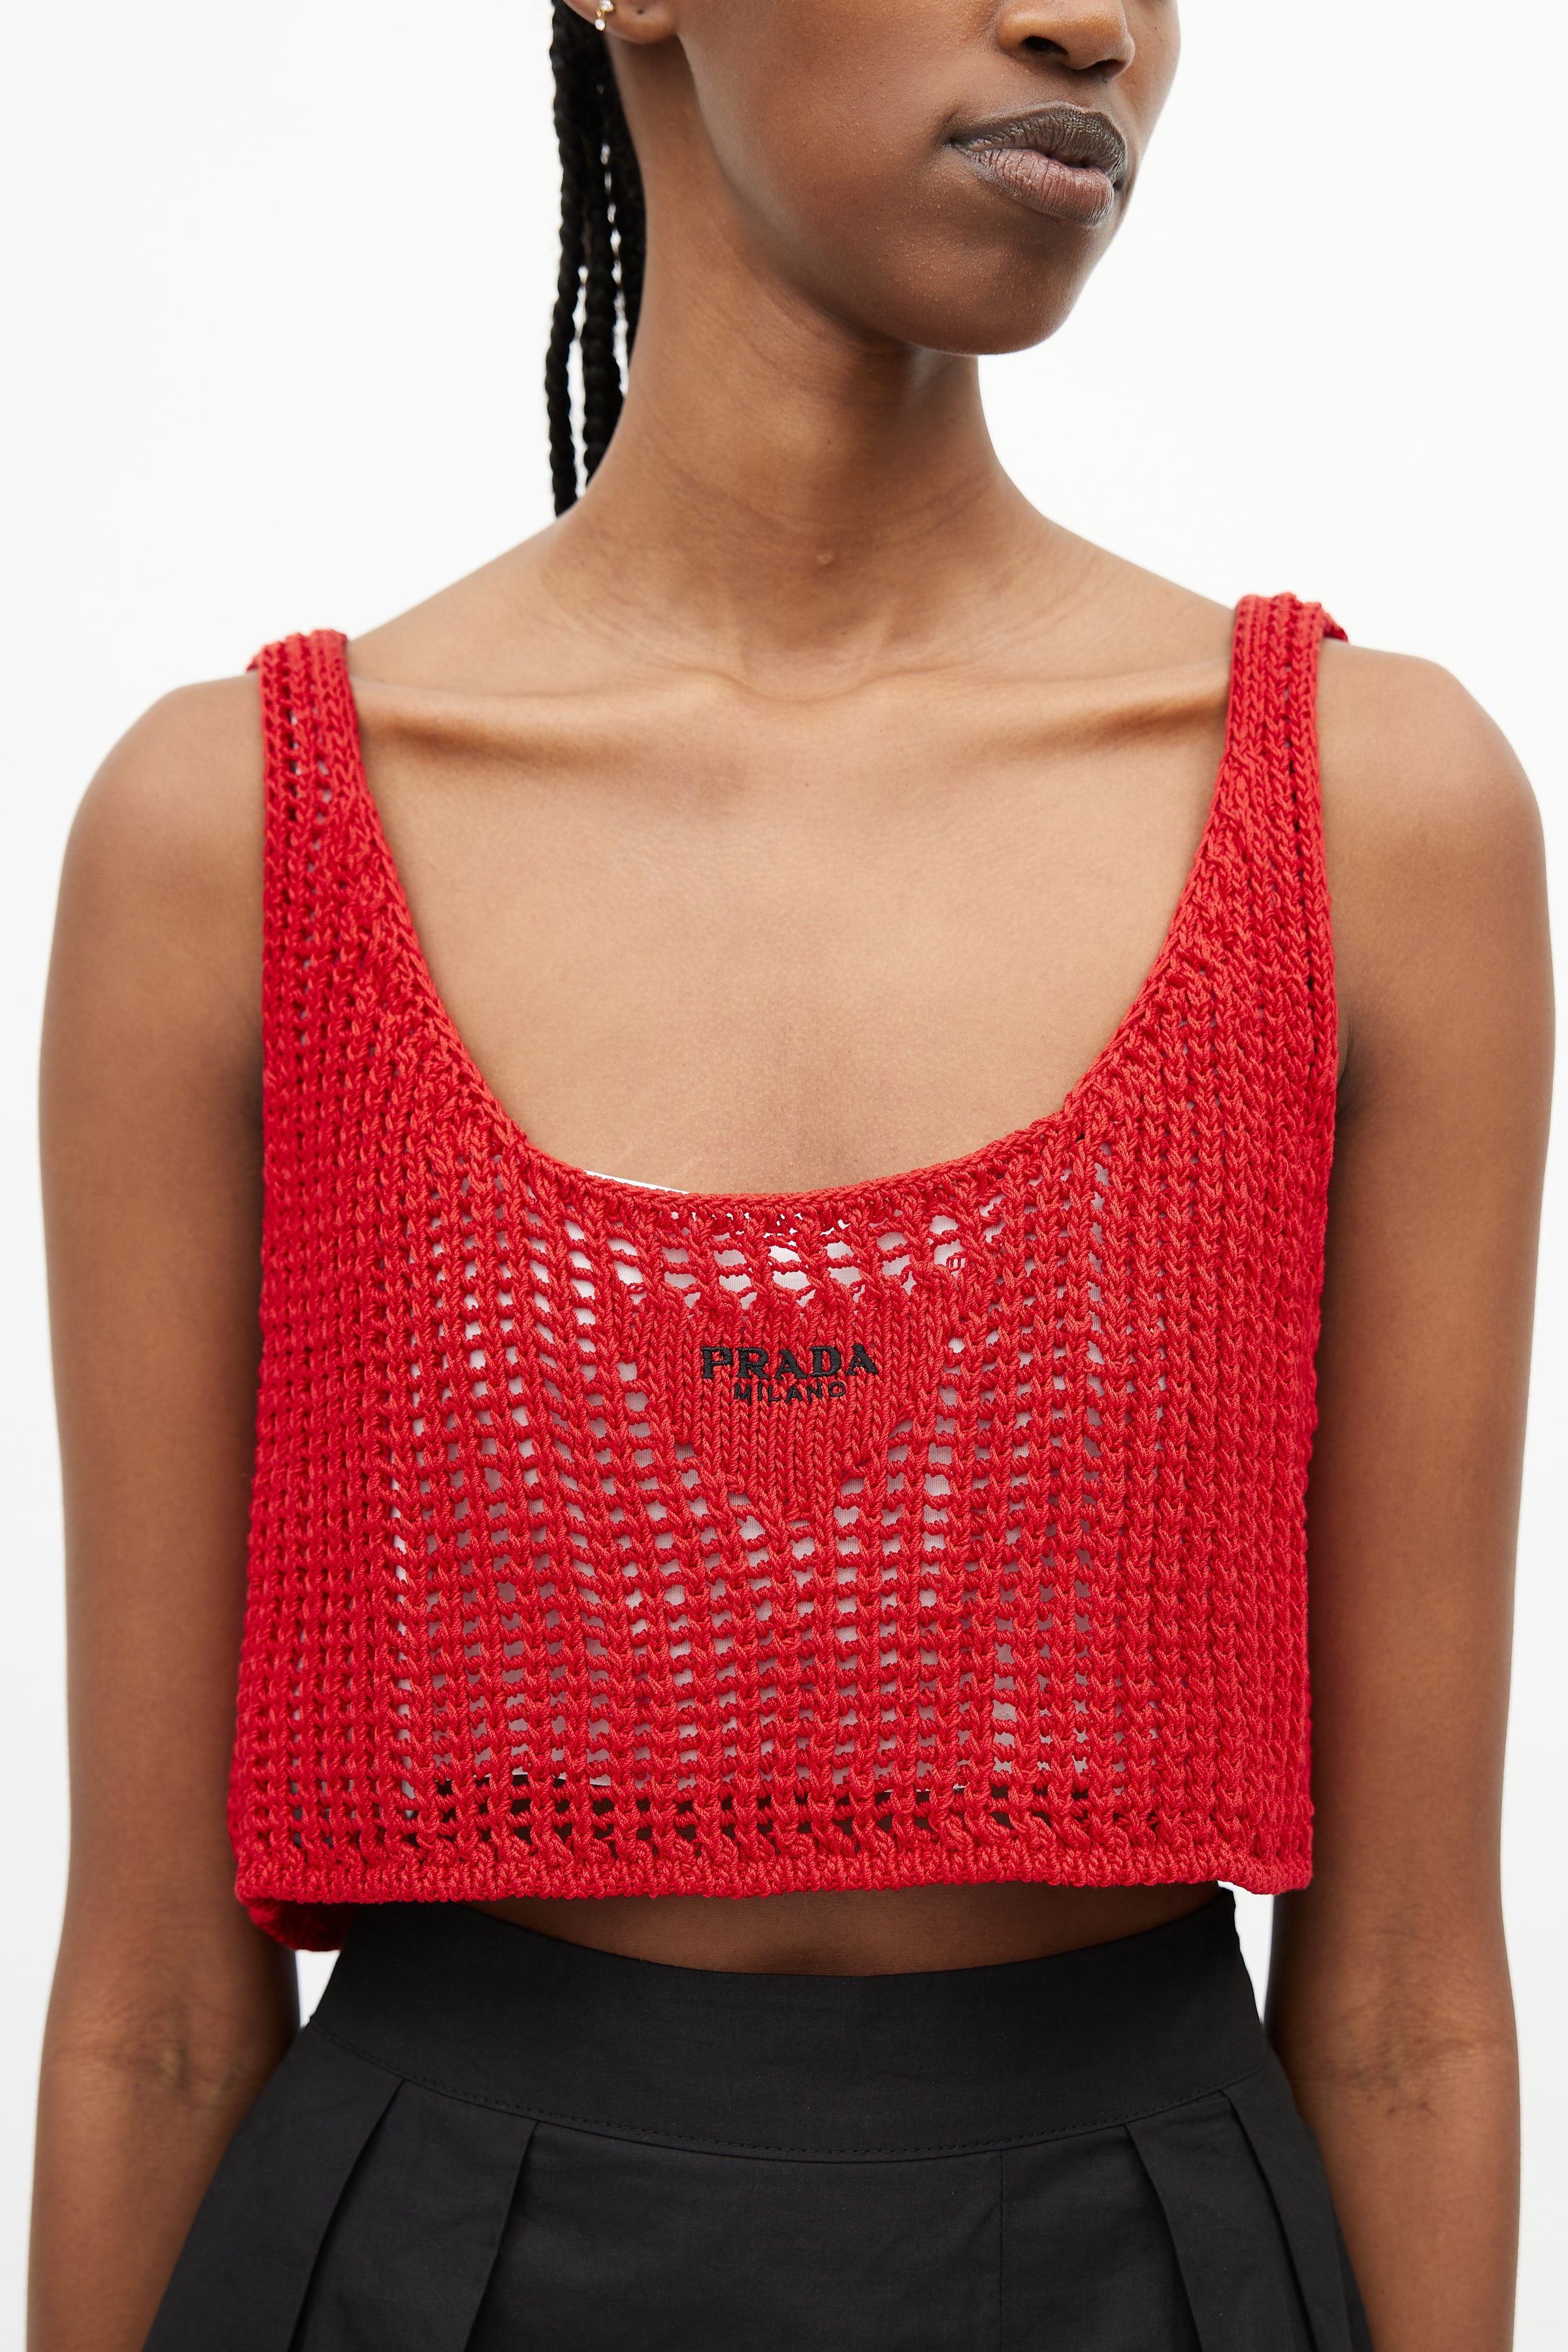 Red Ricrac-trim gingham-cotton shirt, Prada